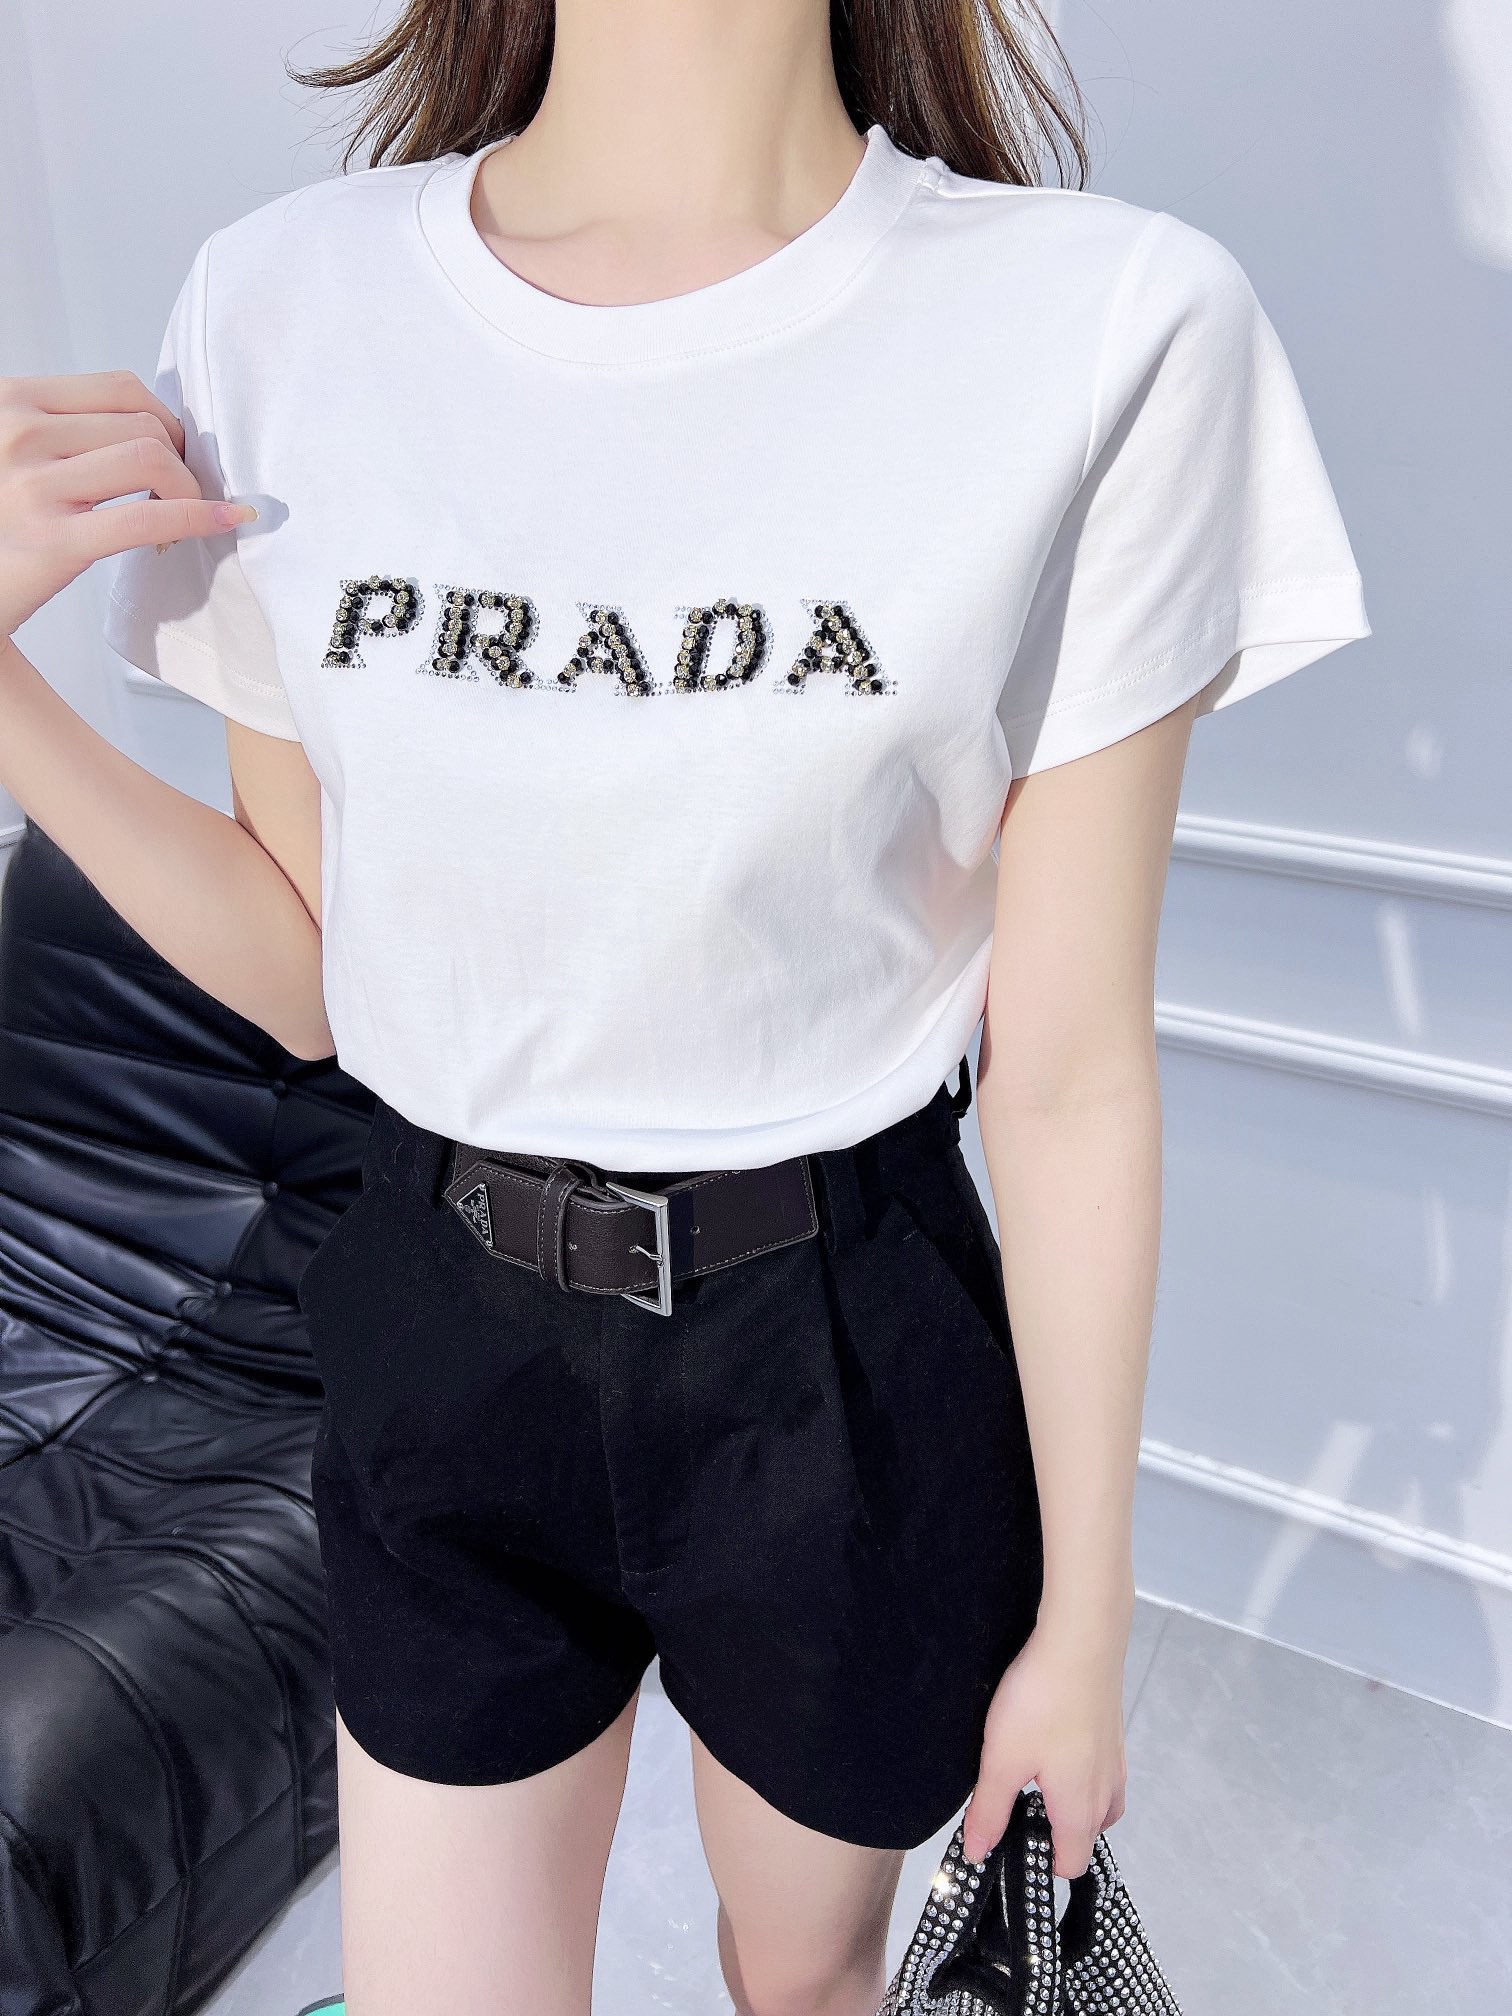 Vendre de haute qualité
 Prada Vêtements T-Shirt Réplique pour pas cher
 Série printemps Manches courtes